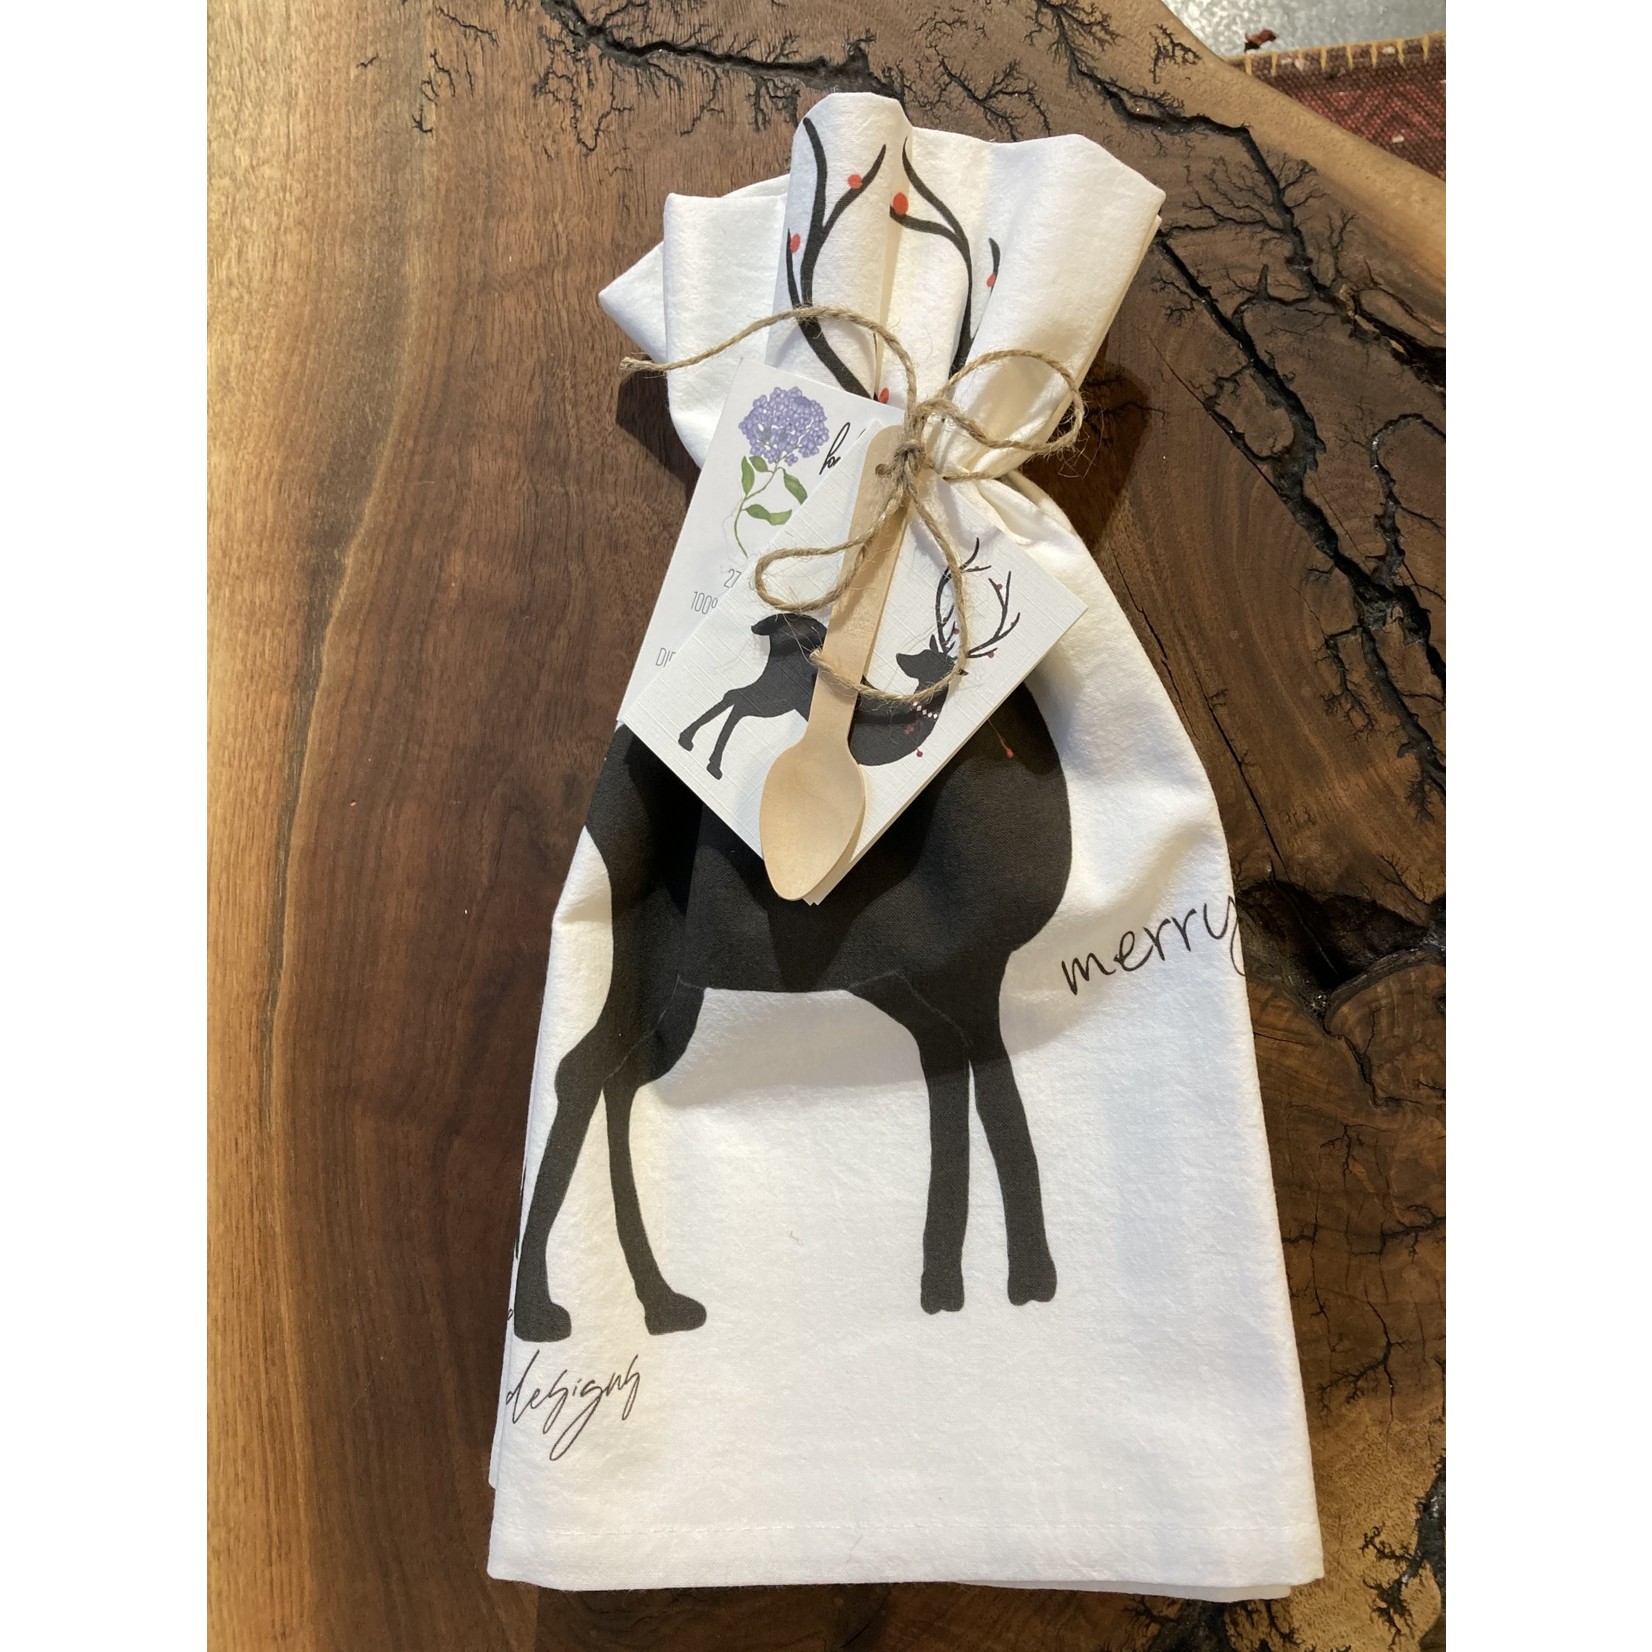 Bebe Blu Designs Bebe Blu Designs Flour Sack Towel - Deer Silhouette